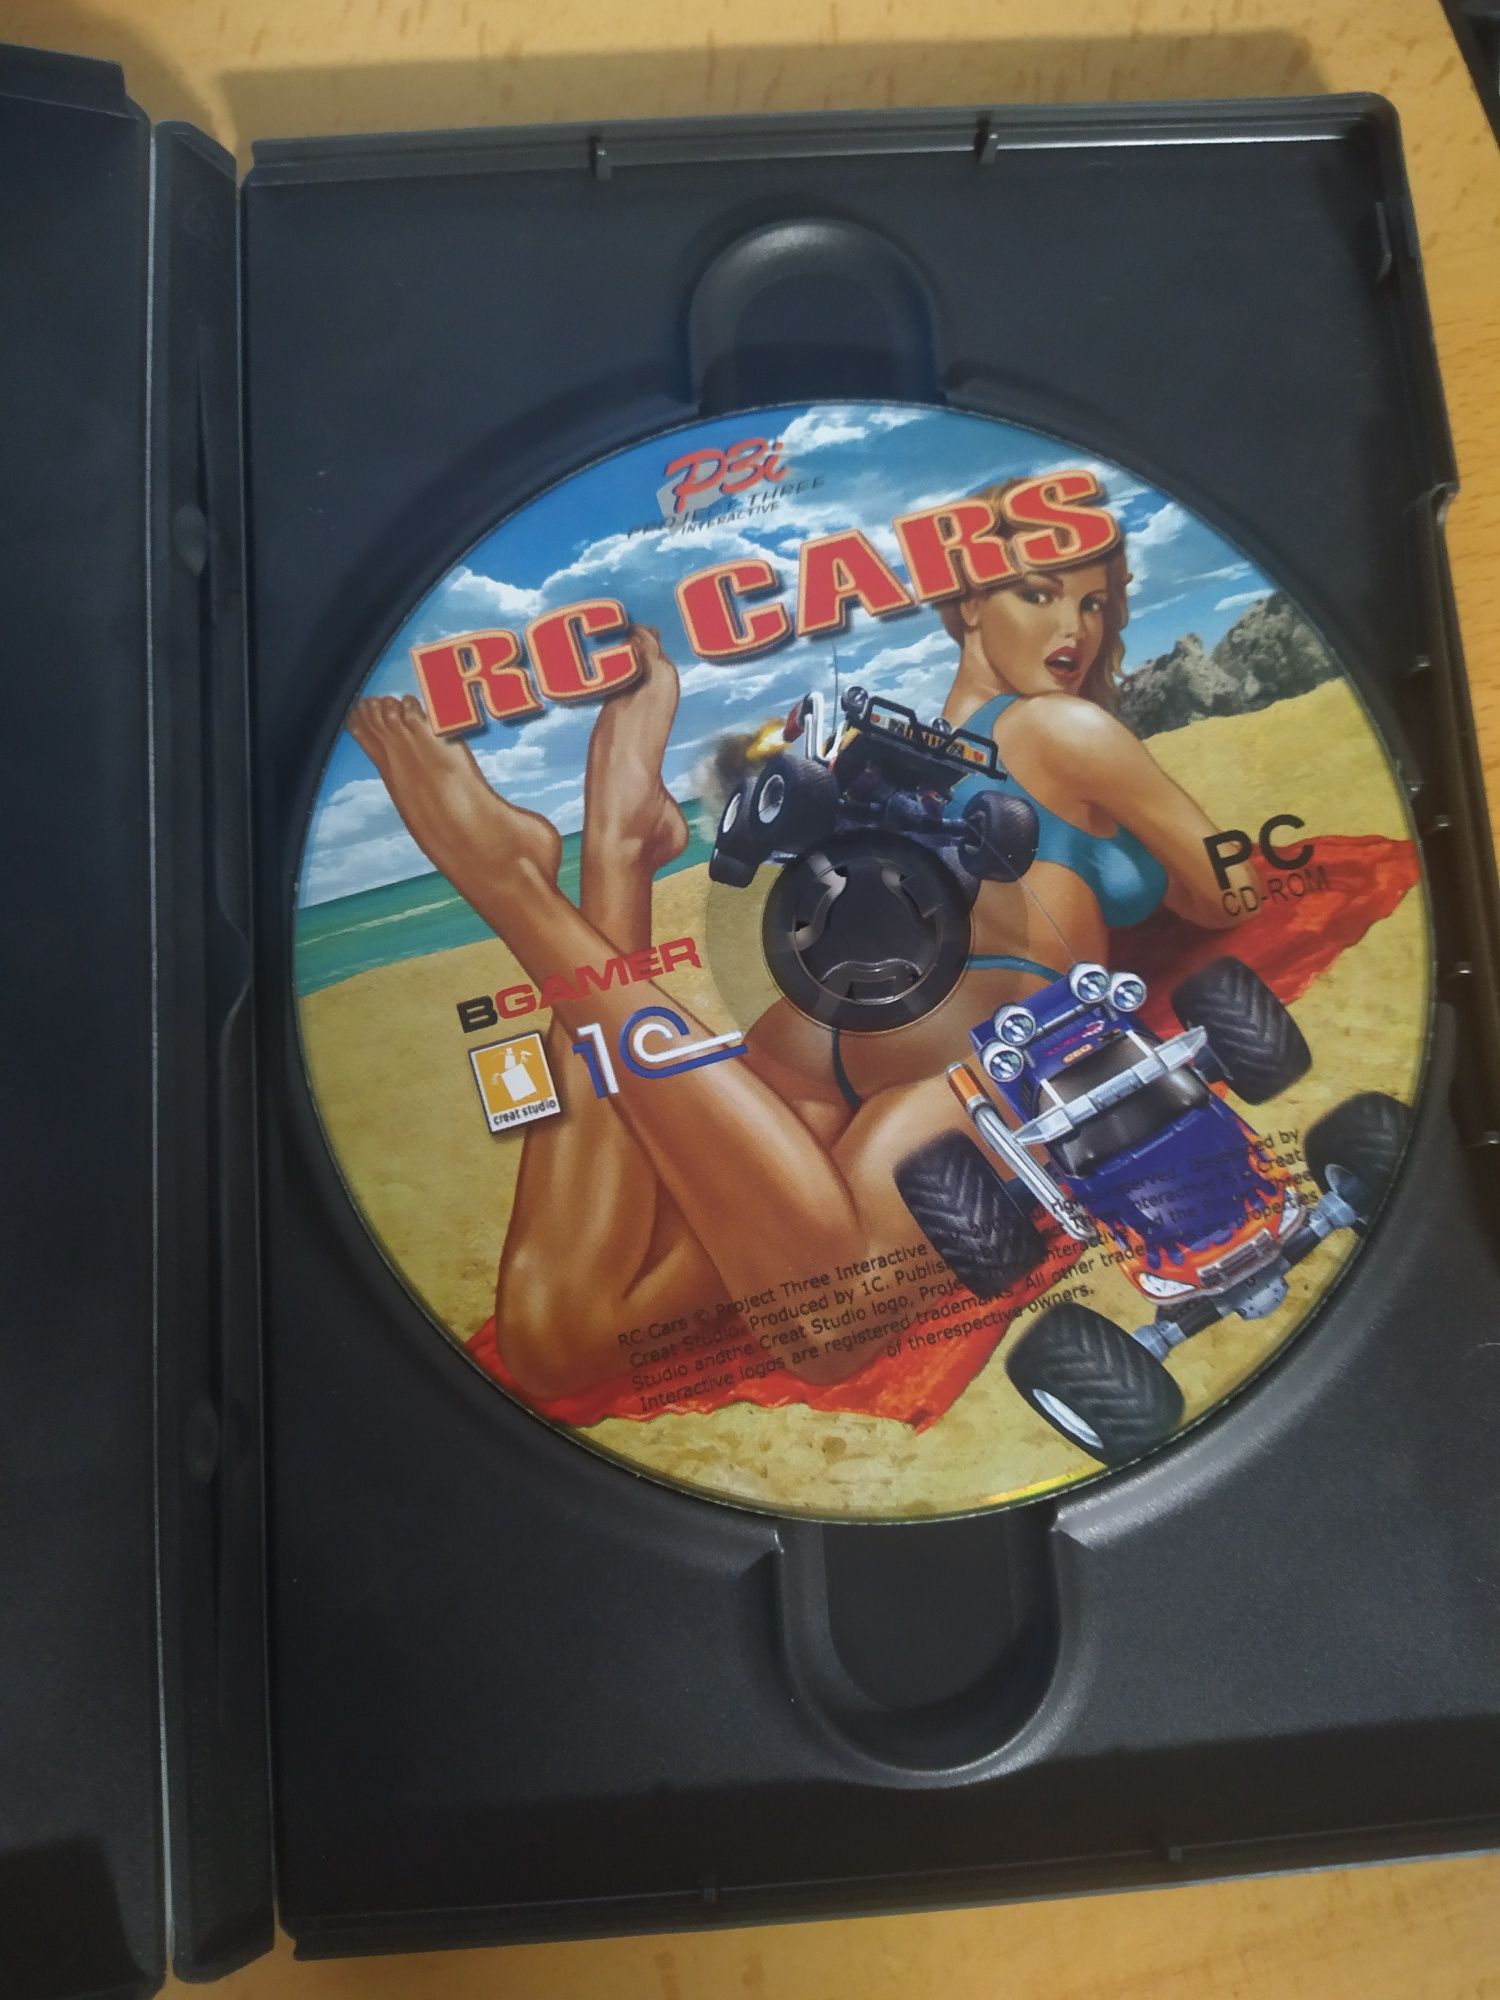 Vendo o jogo para PC de carros "RC Cars"